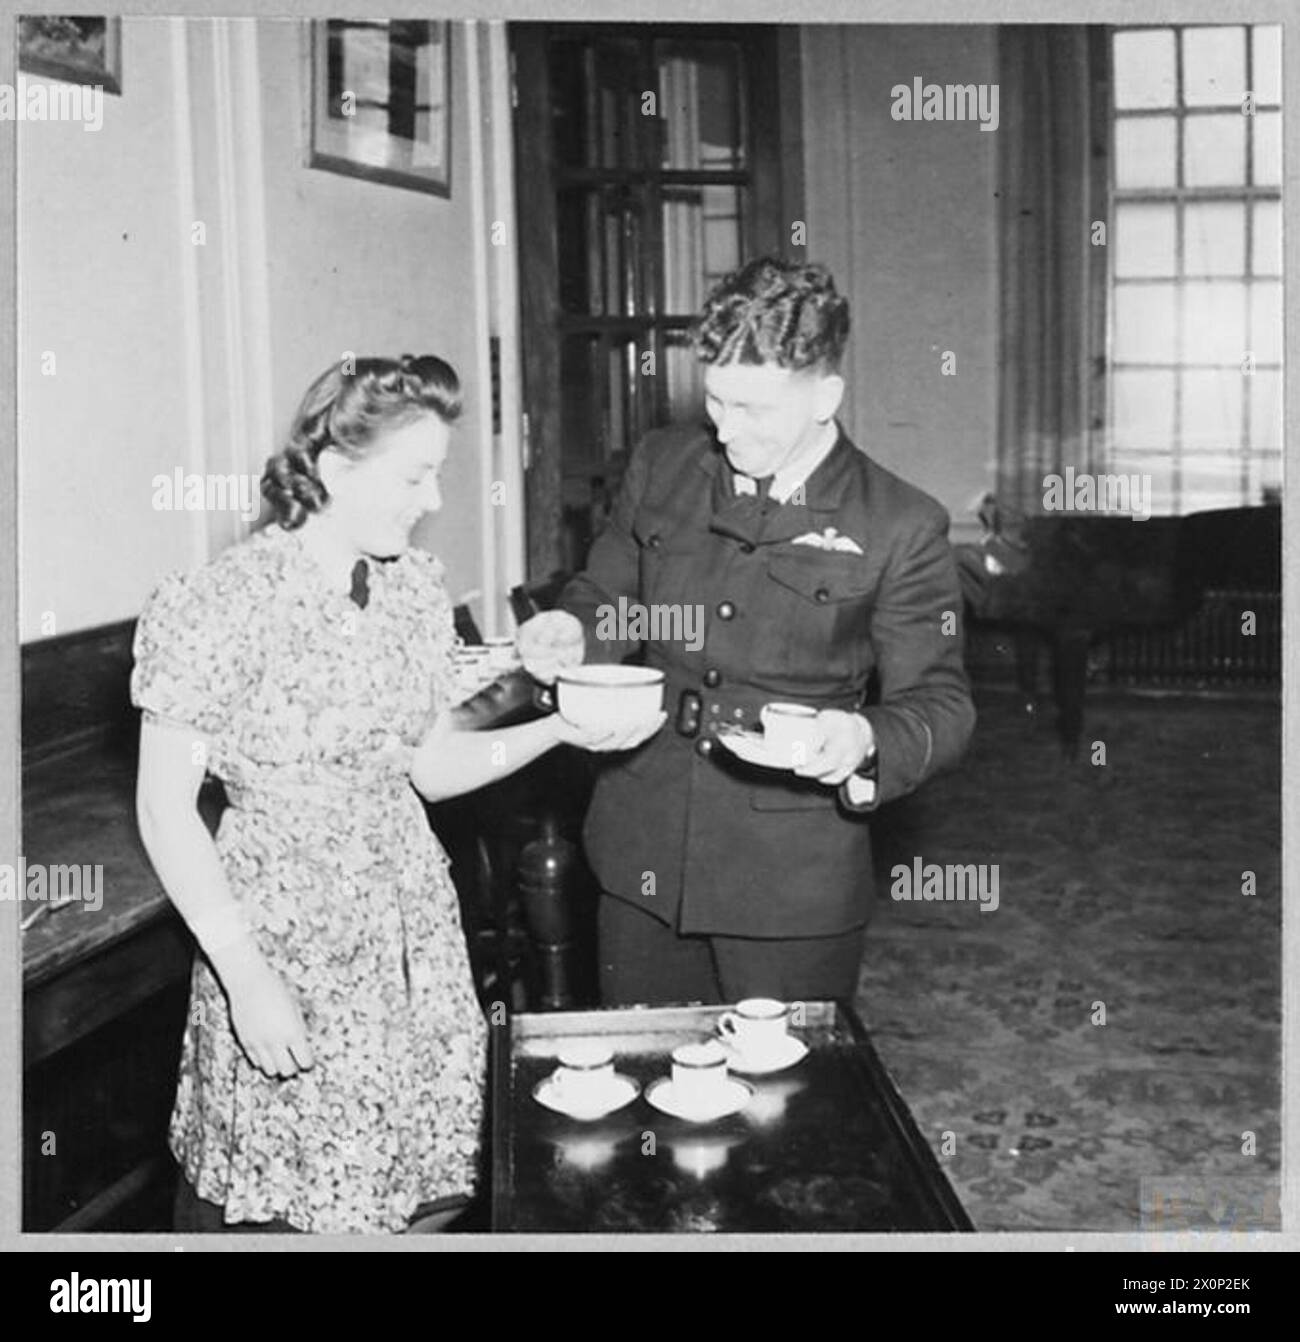 AVION NOMMÉ : ESCADRON DE MYSORE - pilote officier E.S. Hall, Australie, aide dans le rationnement de sucre à ses collègues. Négatif photographique, Royal Air Force Banque D'Images